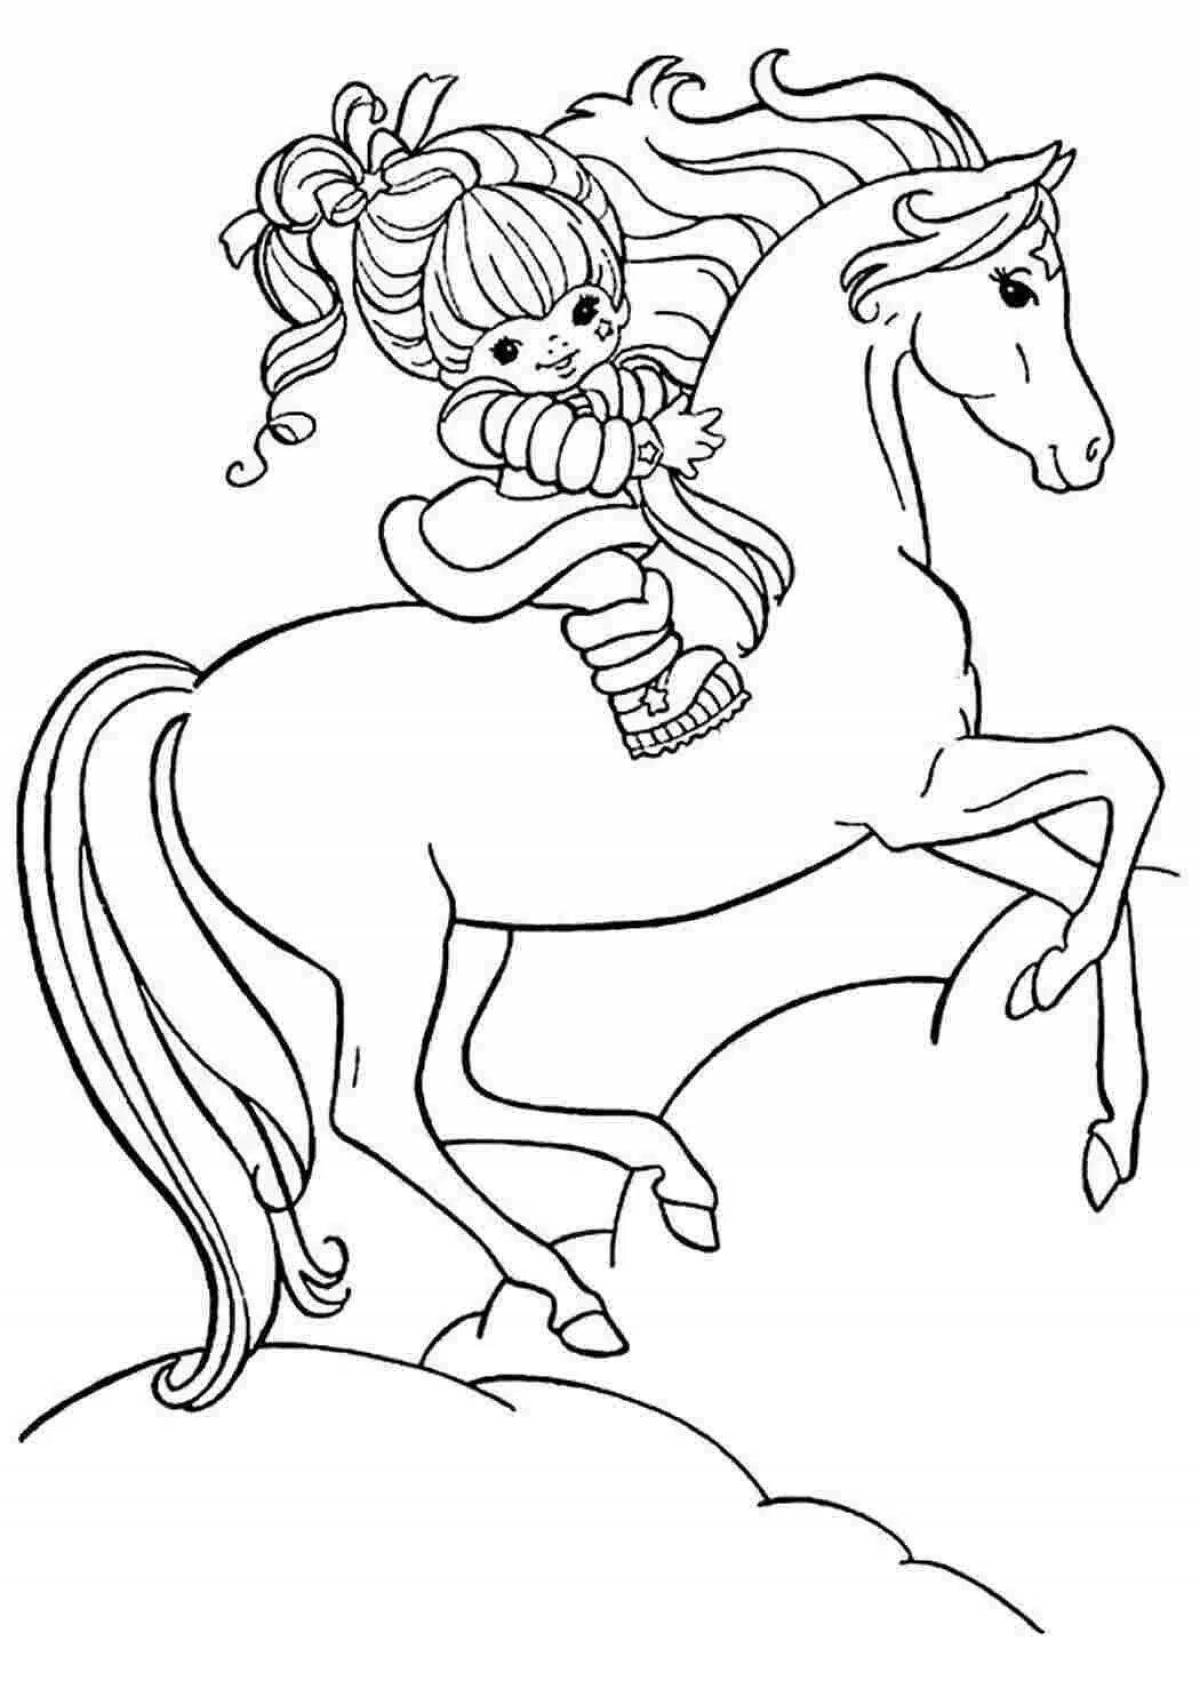 Раскрашиваем лошадку. Раскраска. Лошадка. Лошадка раскраска для детей. Картинки для раскрашивания лошадки. Разукрашка лошадь.